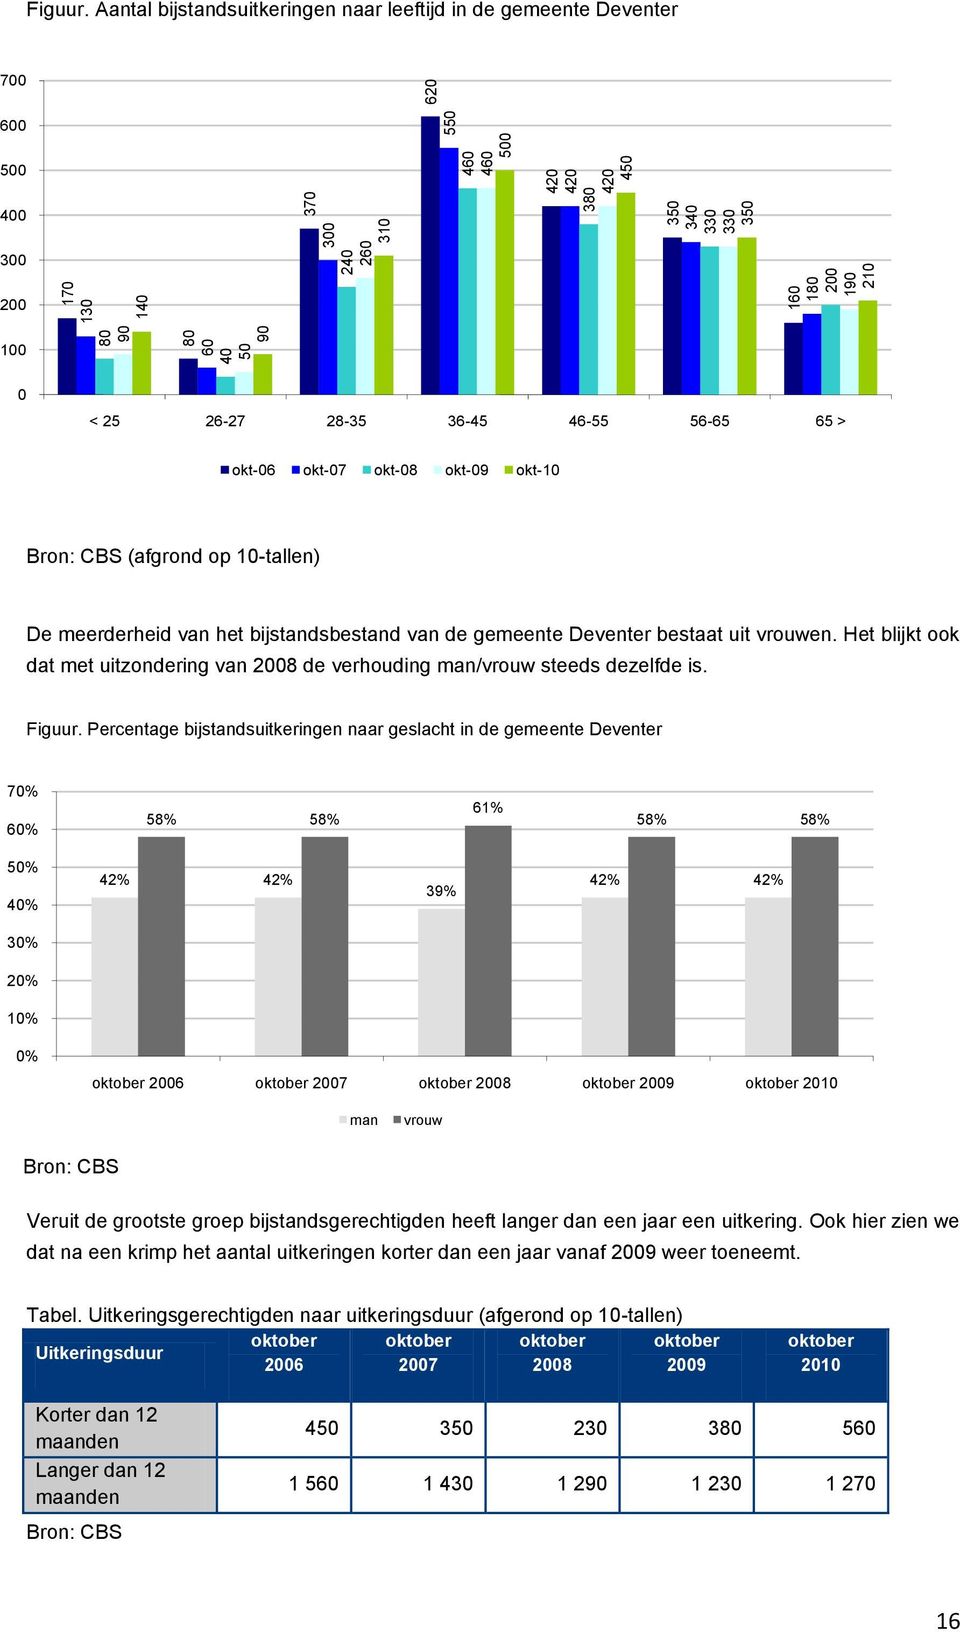 10-tallen) De meerderheid van het bijstandsbestand van de gemeente Deventer bestaat uit vrouwen. Het blijkt ook dat met uitzondering van 2008 de verhouding man/vrouw steeds dezelfde is. Figuur.